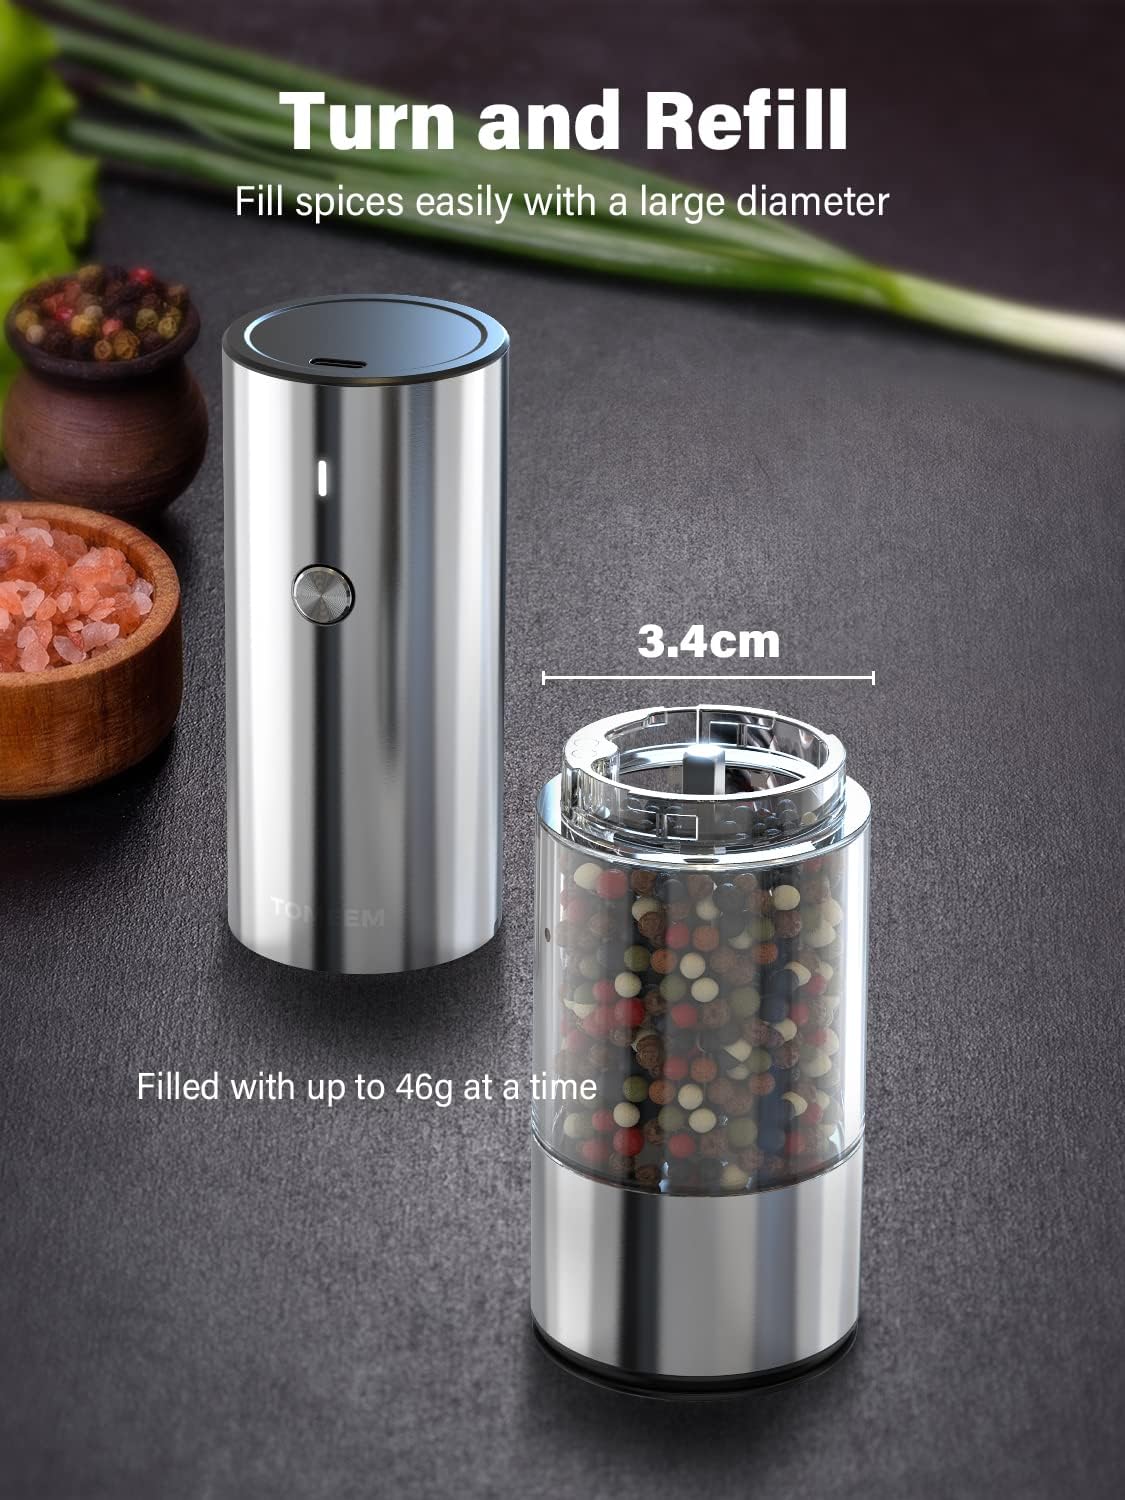 Upgraded Larger Capacity] Electric Salt and Pepper Grinder Set